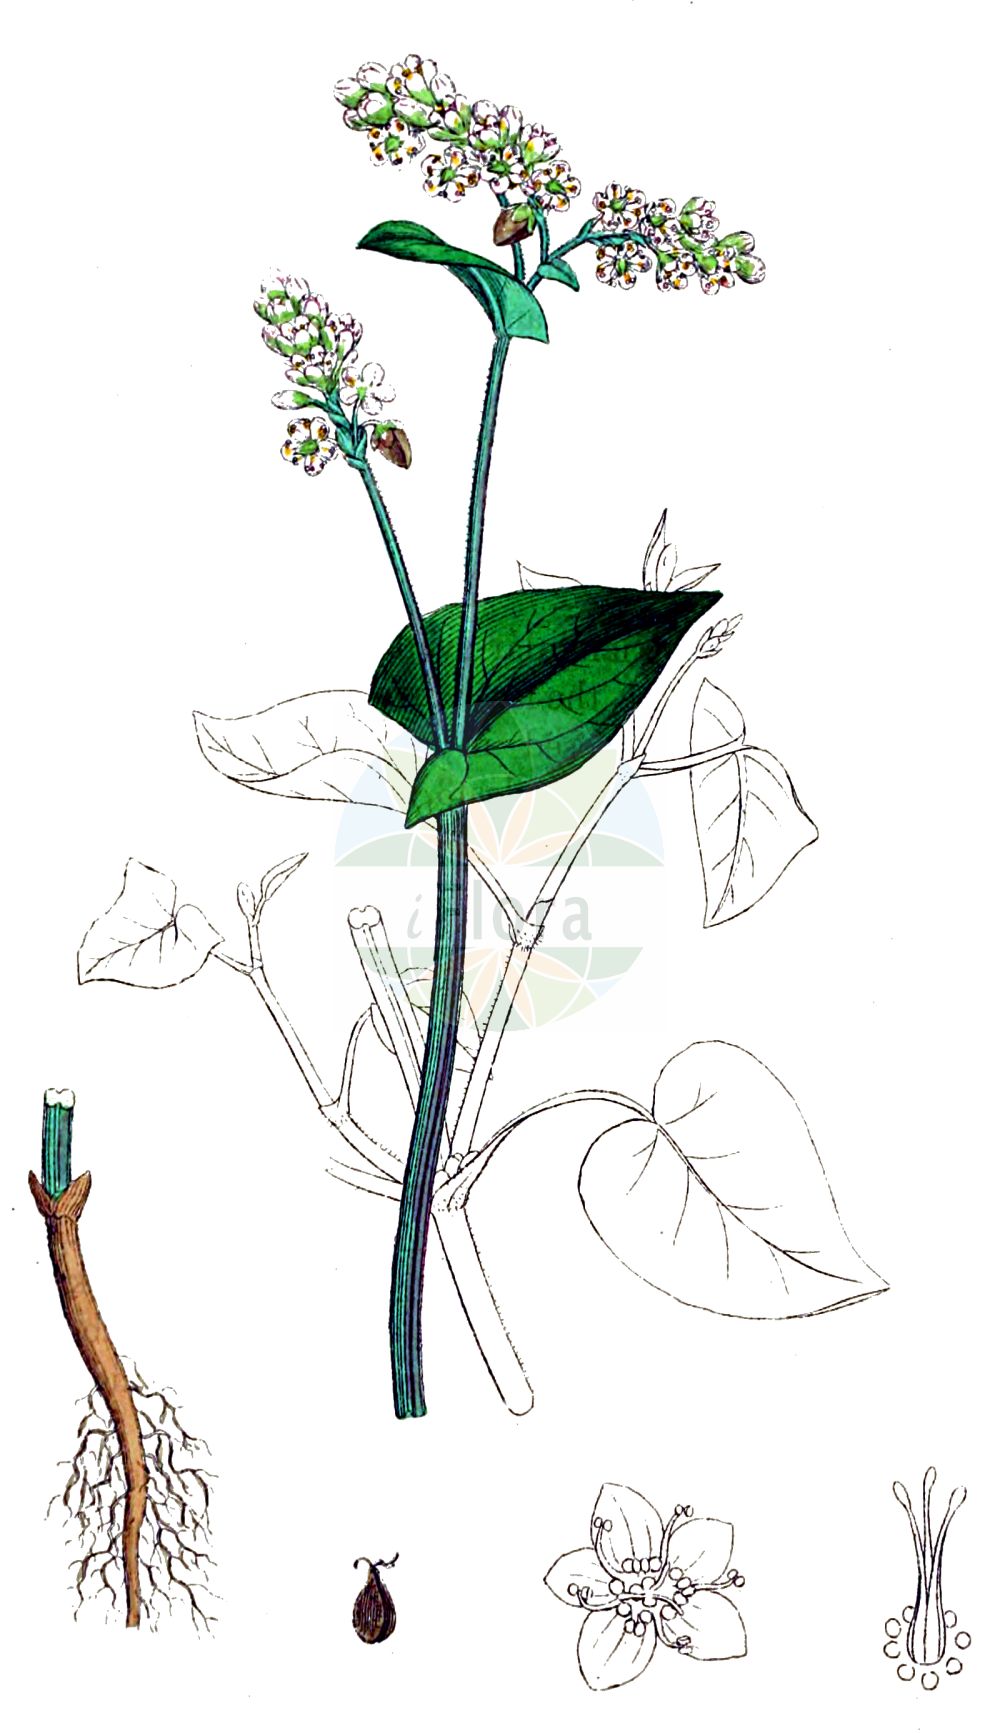 Historische Abbildung von Fagopyrum esculentum (Echter Buchweizen - Buckwheat). Das Bild zeigt Blatt, Bluete, Frucht und Same. ---- Historical Drawing of Fagopyrum esculentum (Echter Buchweizen - Buckwheat). The image is showing leaf, flower, fruit and seed.(Fagopyrum esculentum,Echter Buchweizen,Buckwheat,Fagopyrum esculentum,Fagopyrum sagittatum,Fagopyrum vulgare,Polygonum fagopyrum,Echter Buchweizen,Heidekorn,Buckwheat,Common Buckwheat,Fagopyrum,Buchweizen,Buckwheat,Polygonaceae,Knöterichgewächse,Knotgrass family,Blatt,Bluete,Frucht,Same,leaf,flower,fruit,seed,Sowerby (1790-1813))